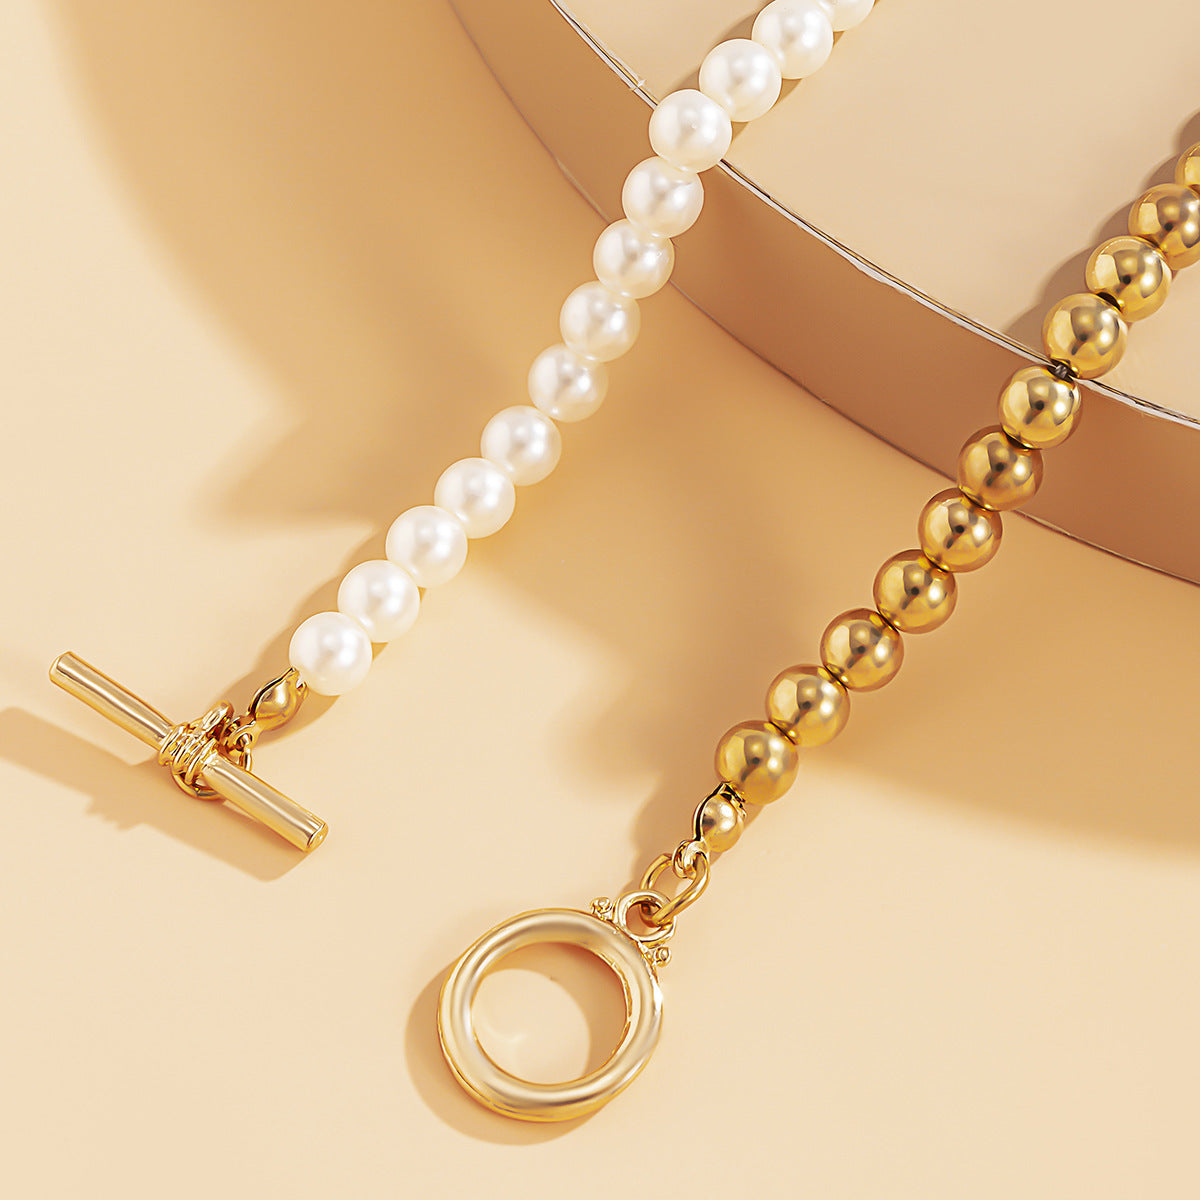 Half-pearl, Half-round Bead Necklace, Retro Simple Hip-hop Trend Chain Necklace